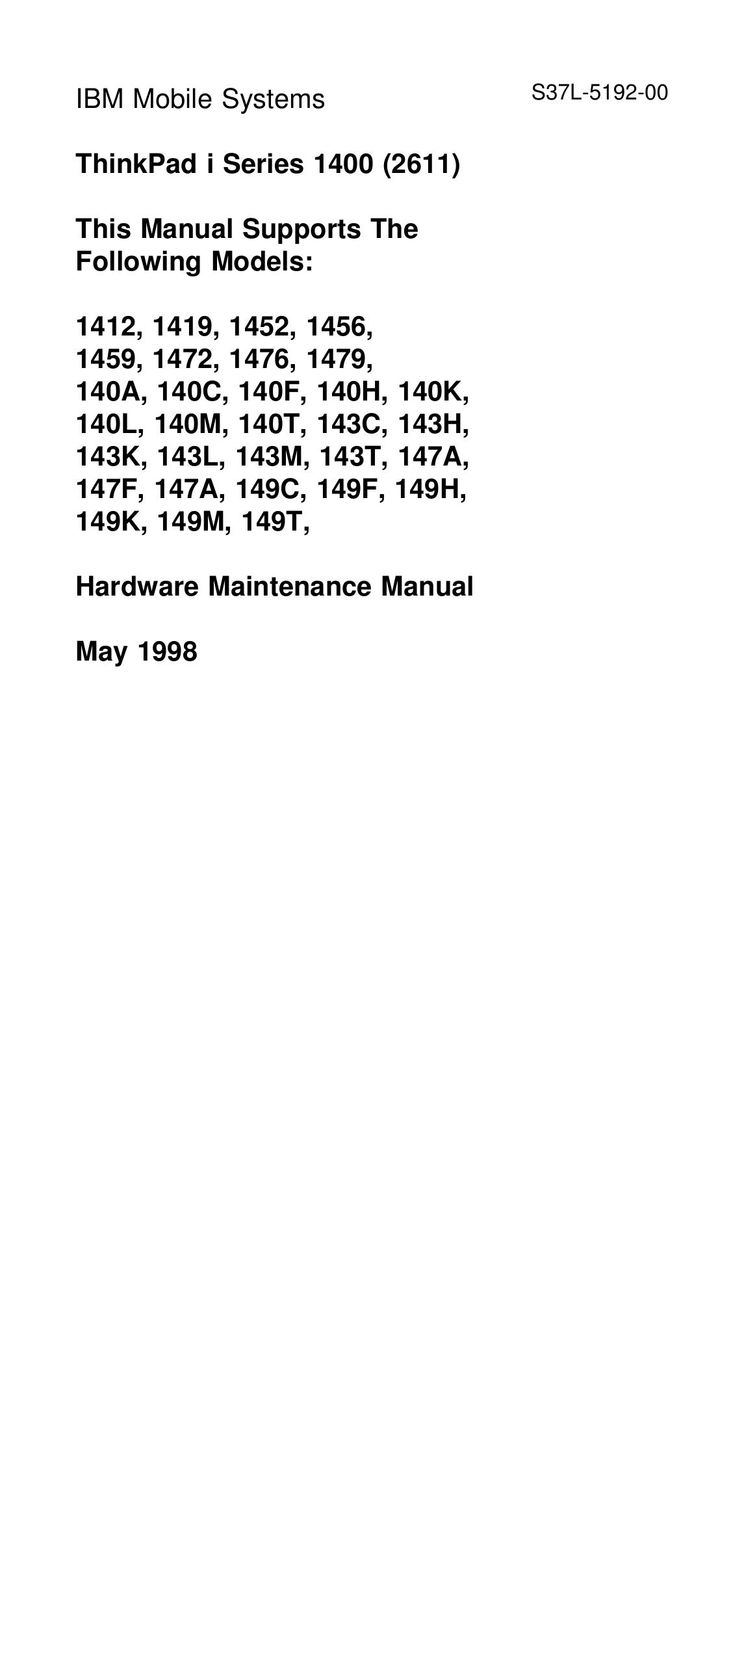 IBM 149C Laptop User Manual